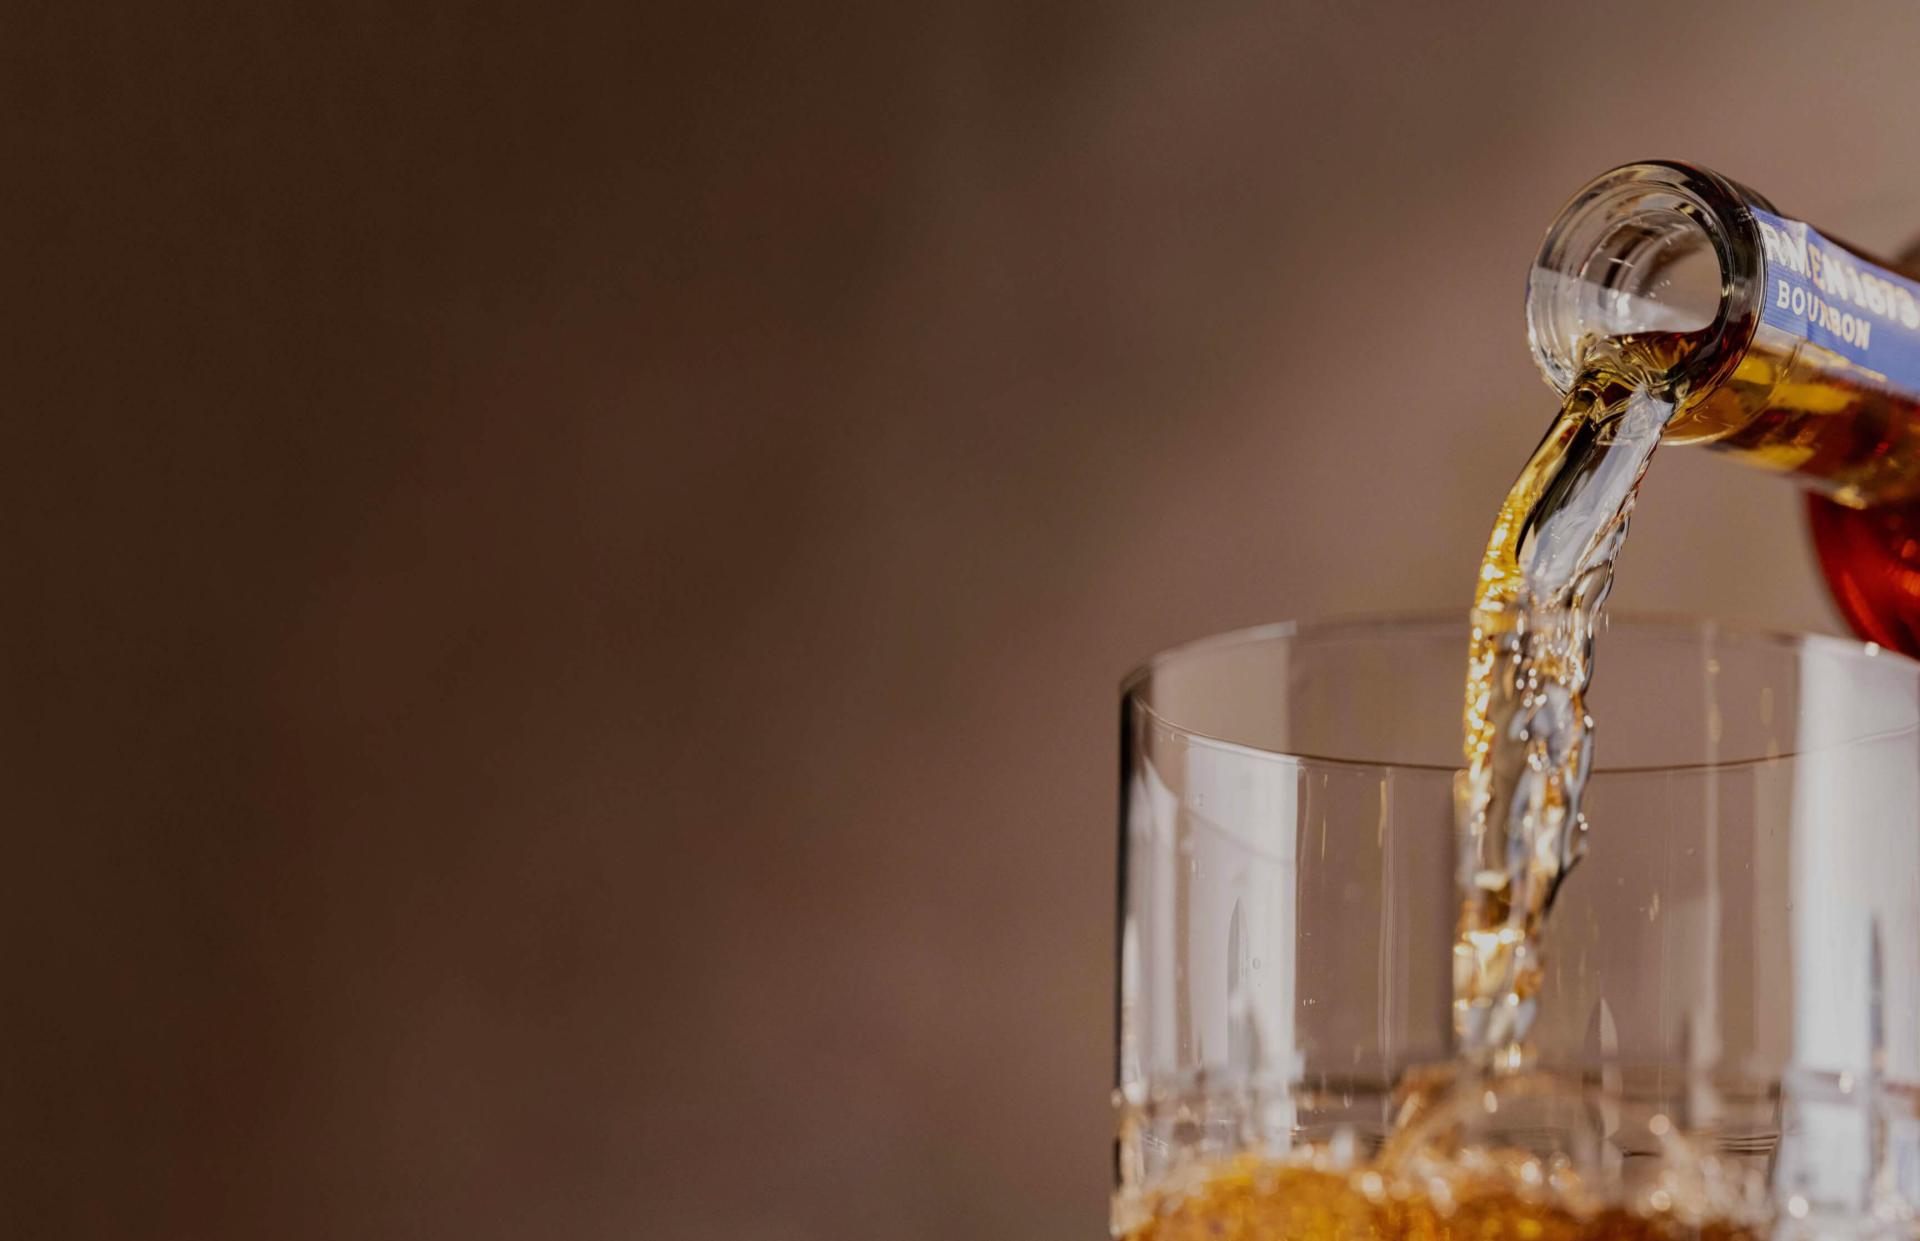 barmen bottle pouring whiskey on glass